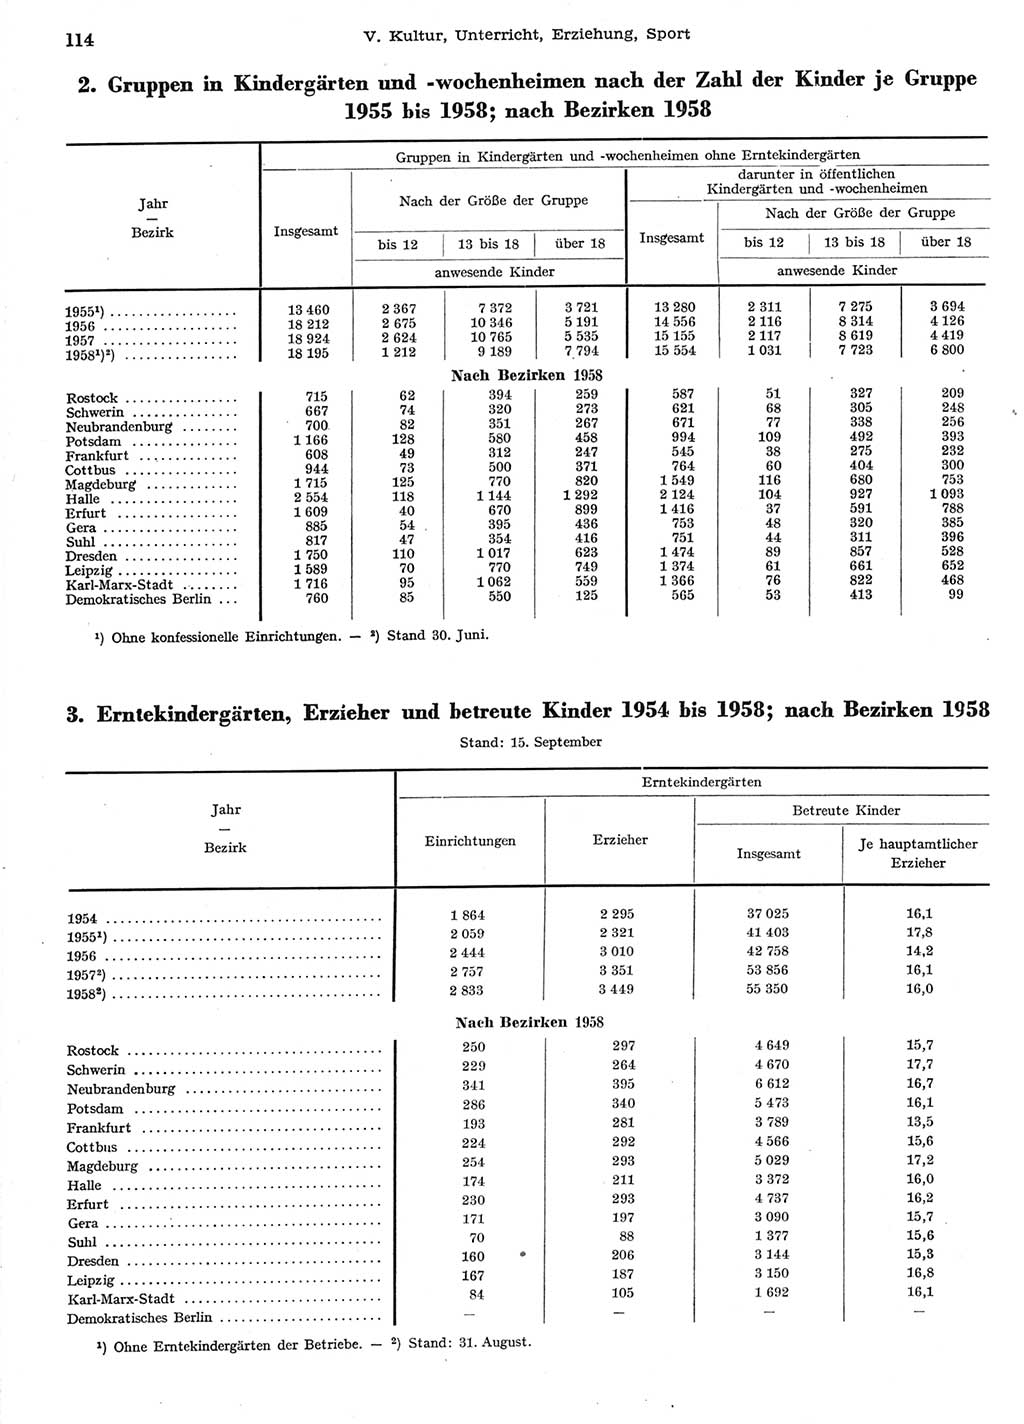 Statistisches Jahrbuch der Deutschen Demokratischen Republik (DDR) 1958, Seite 114 (Stat. Jb. DDR 1958, S. 114)